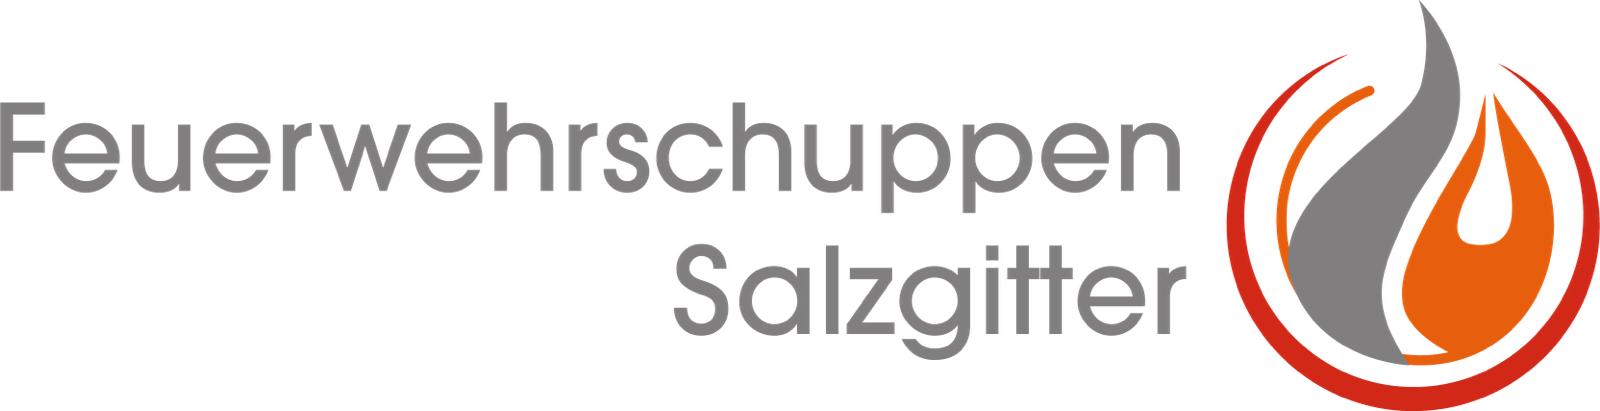 Feuerwehrschuppen-Logo